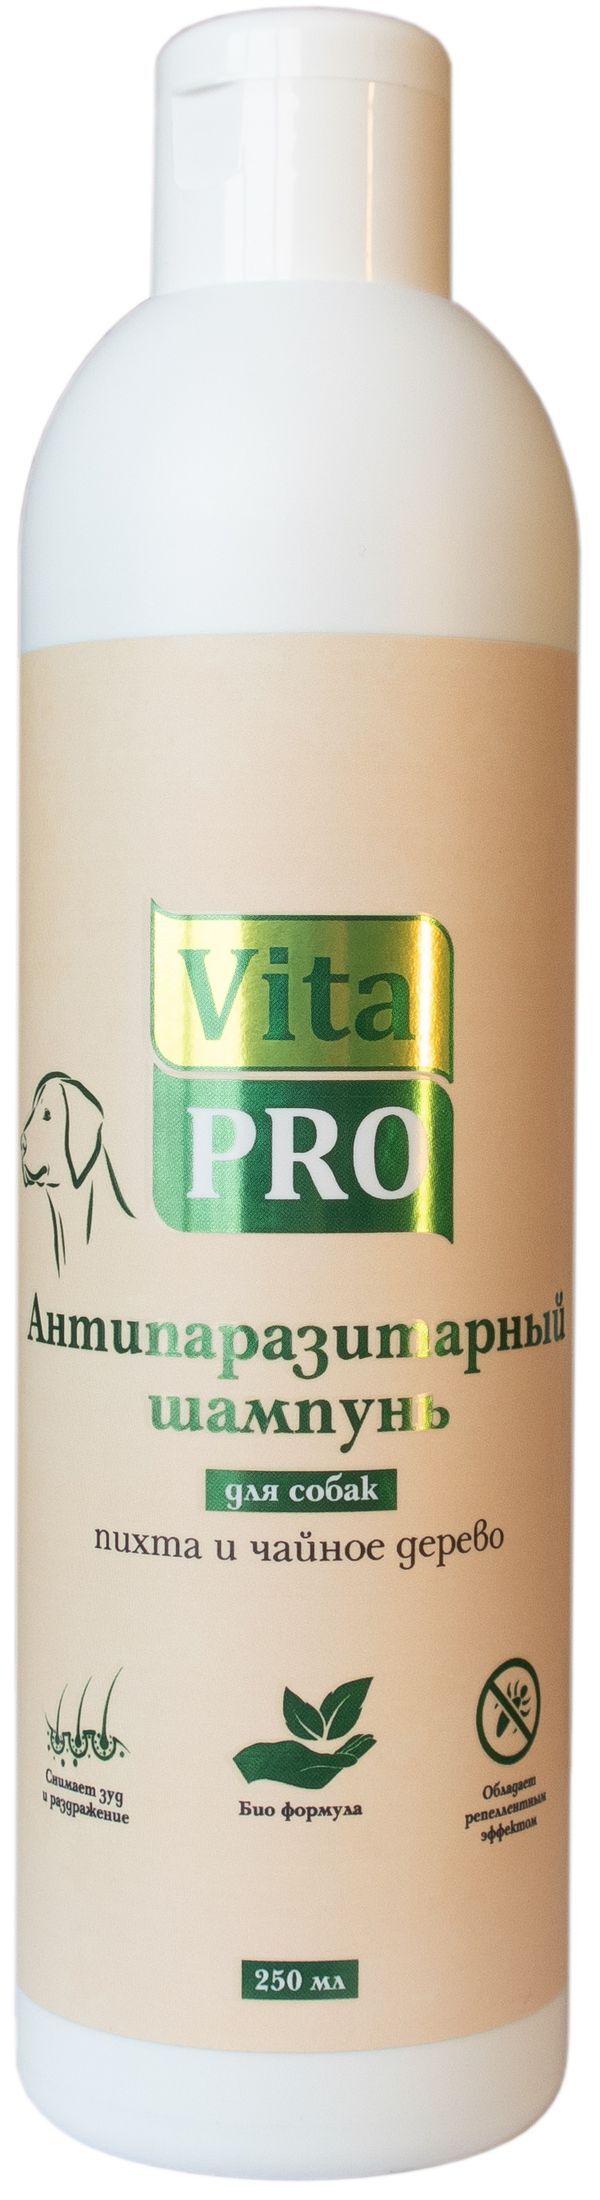 Vita Pro 250 мл биошампунь для собак антипаразитарный с маслом пихты и чайного дерево 1х15